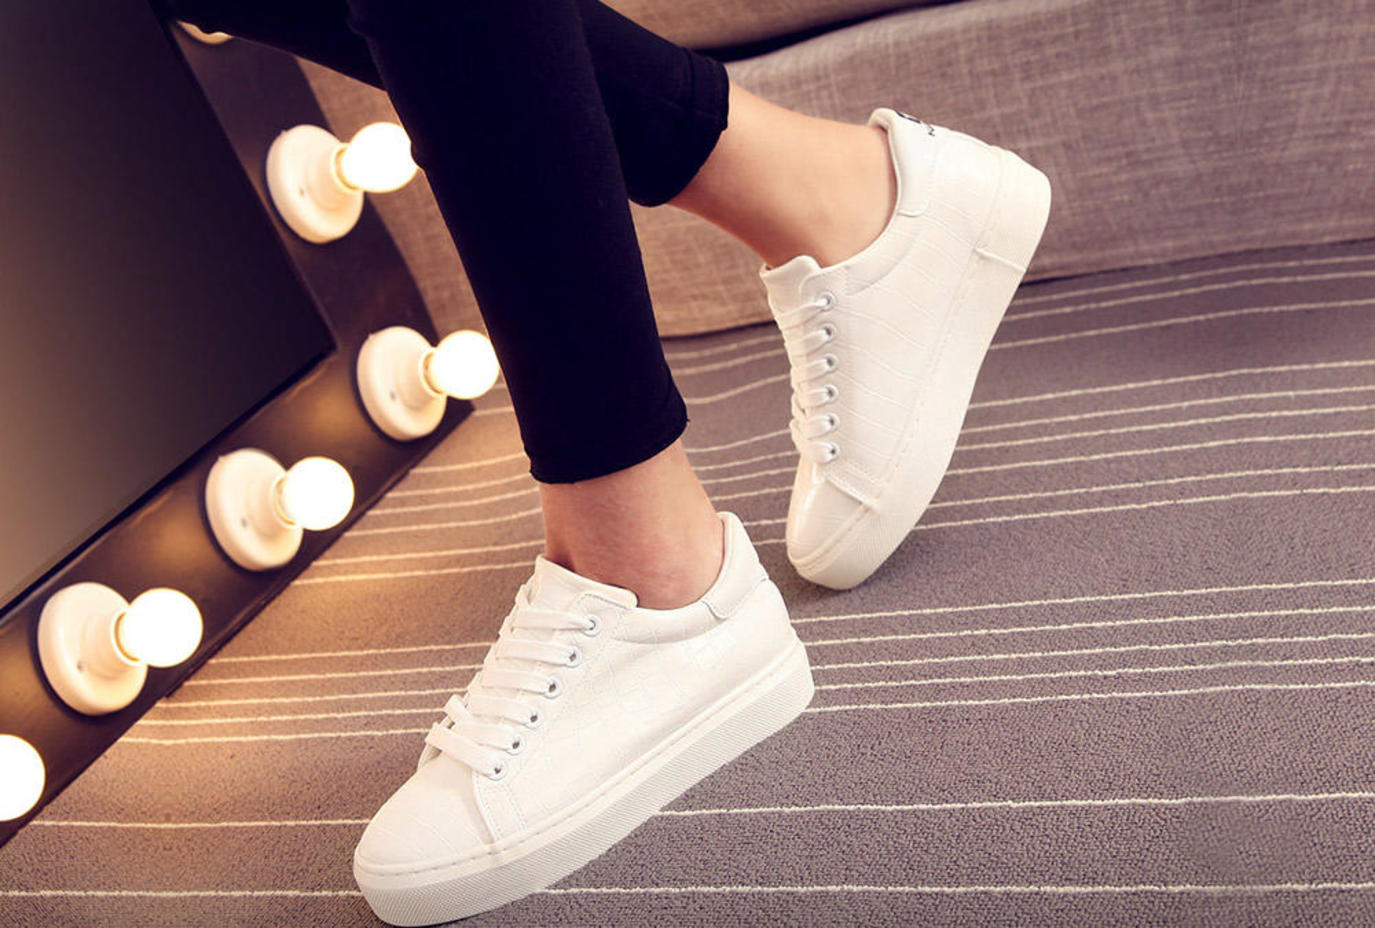 Dream of white sneakers - Sada Al Umma Blog